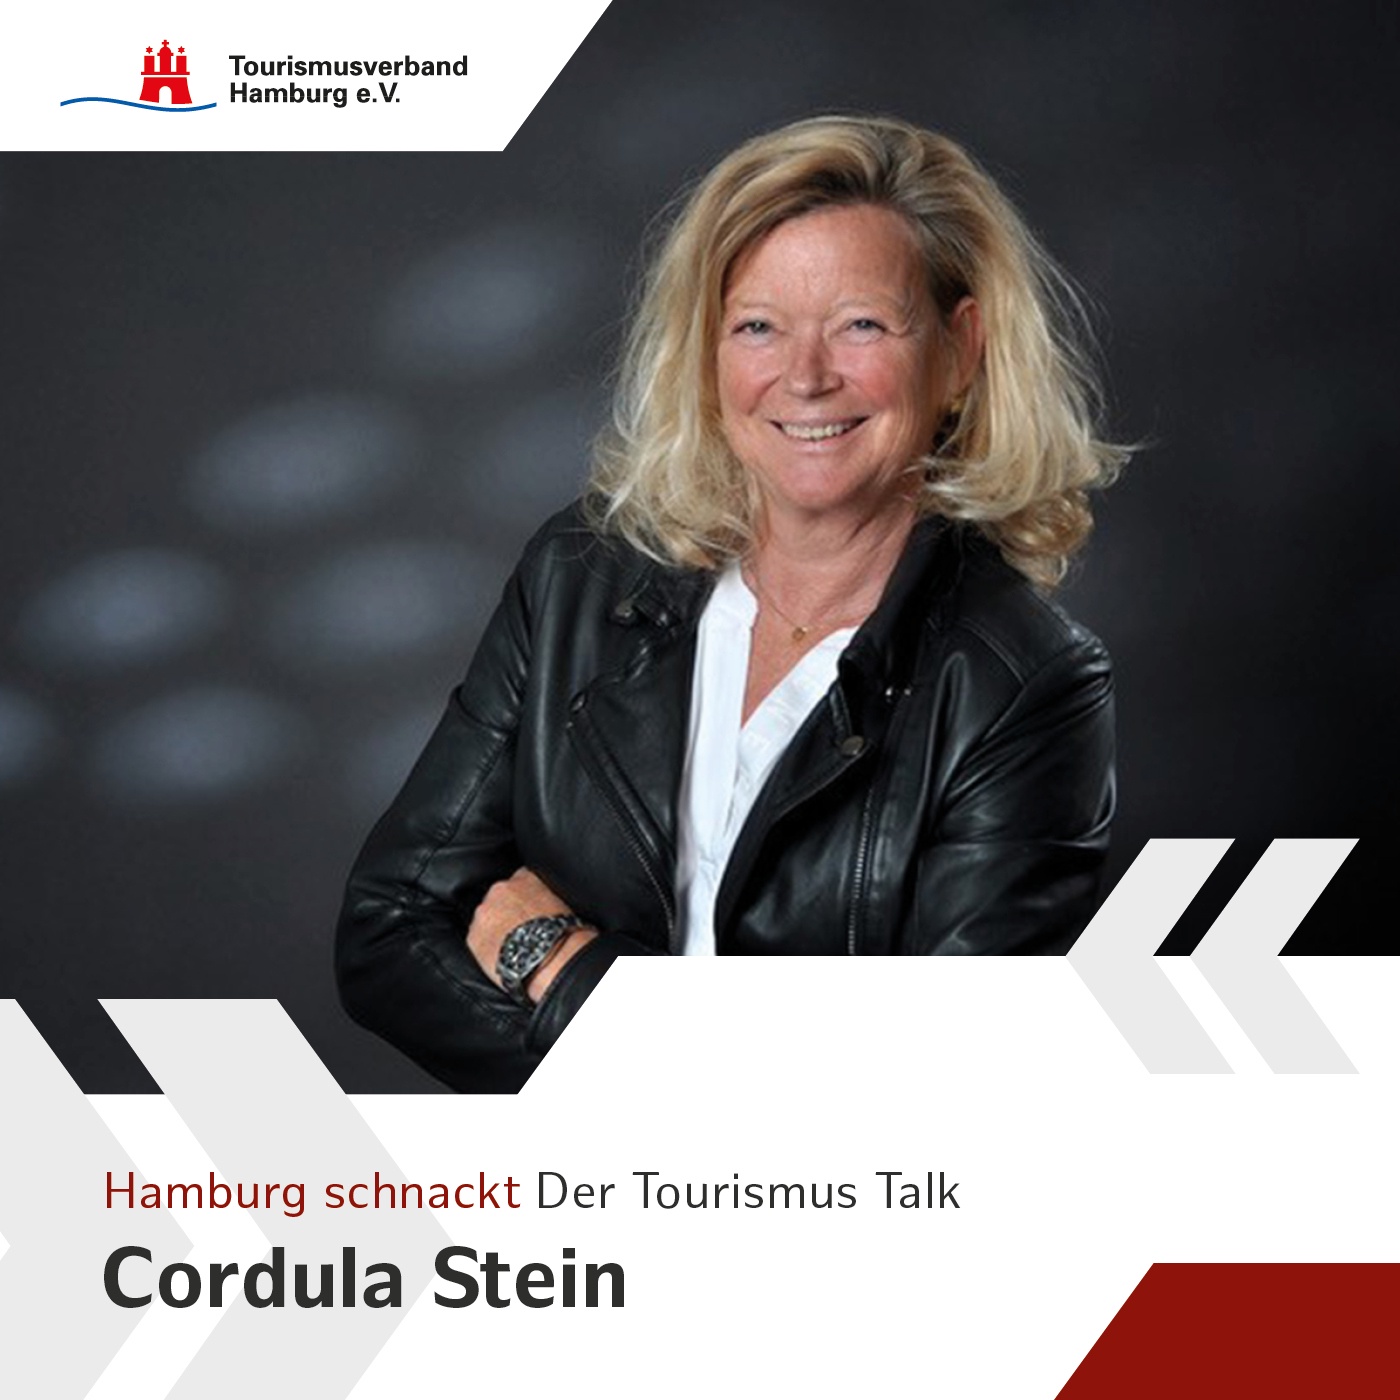 Hamburg schnackt - mit Cordula Stein, Geschäftsführerin der Cordula Stein Event GmbH